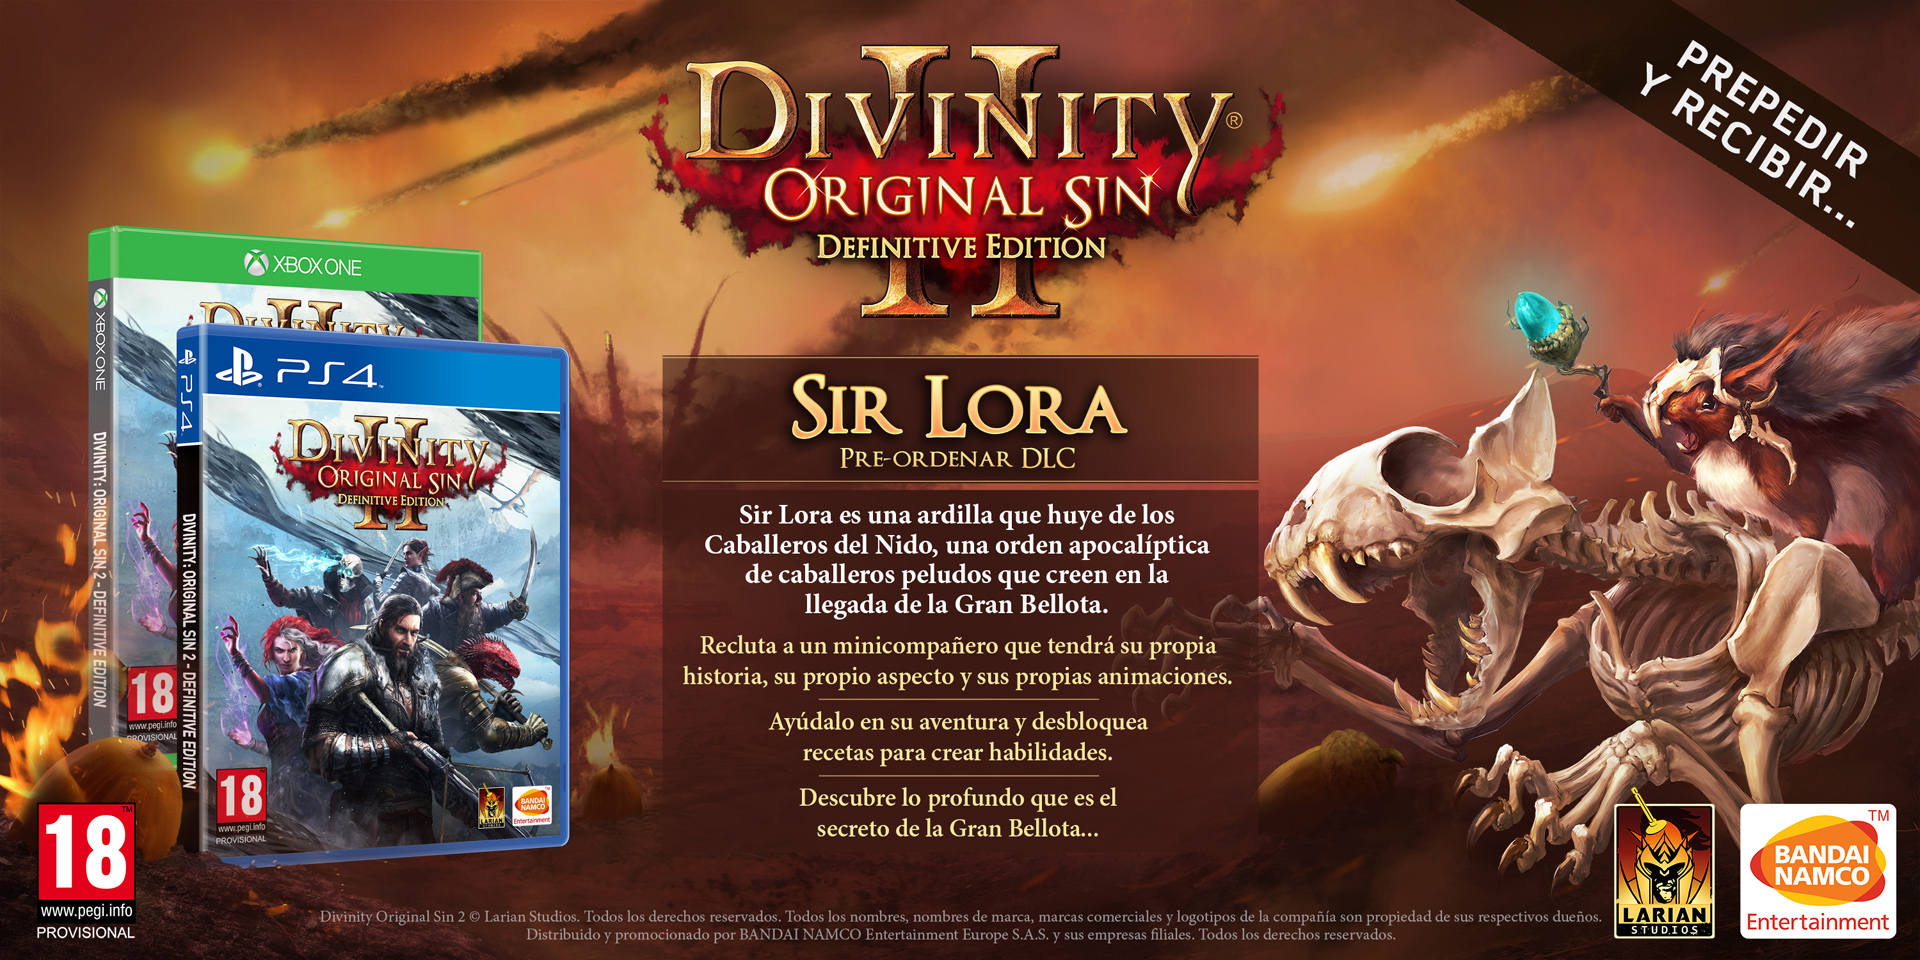 reserva-divinity-original-sin-2-definitive-edition-y-consigue-a-sir-lora-desc-brelo-en-su